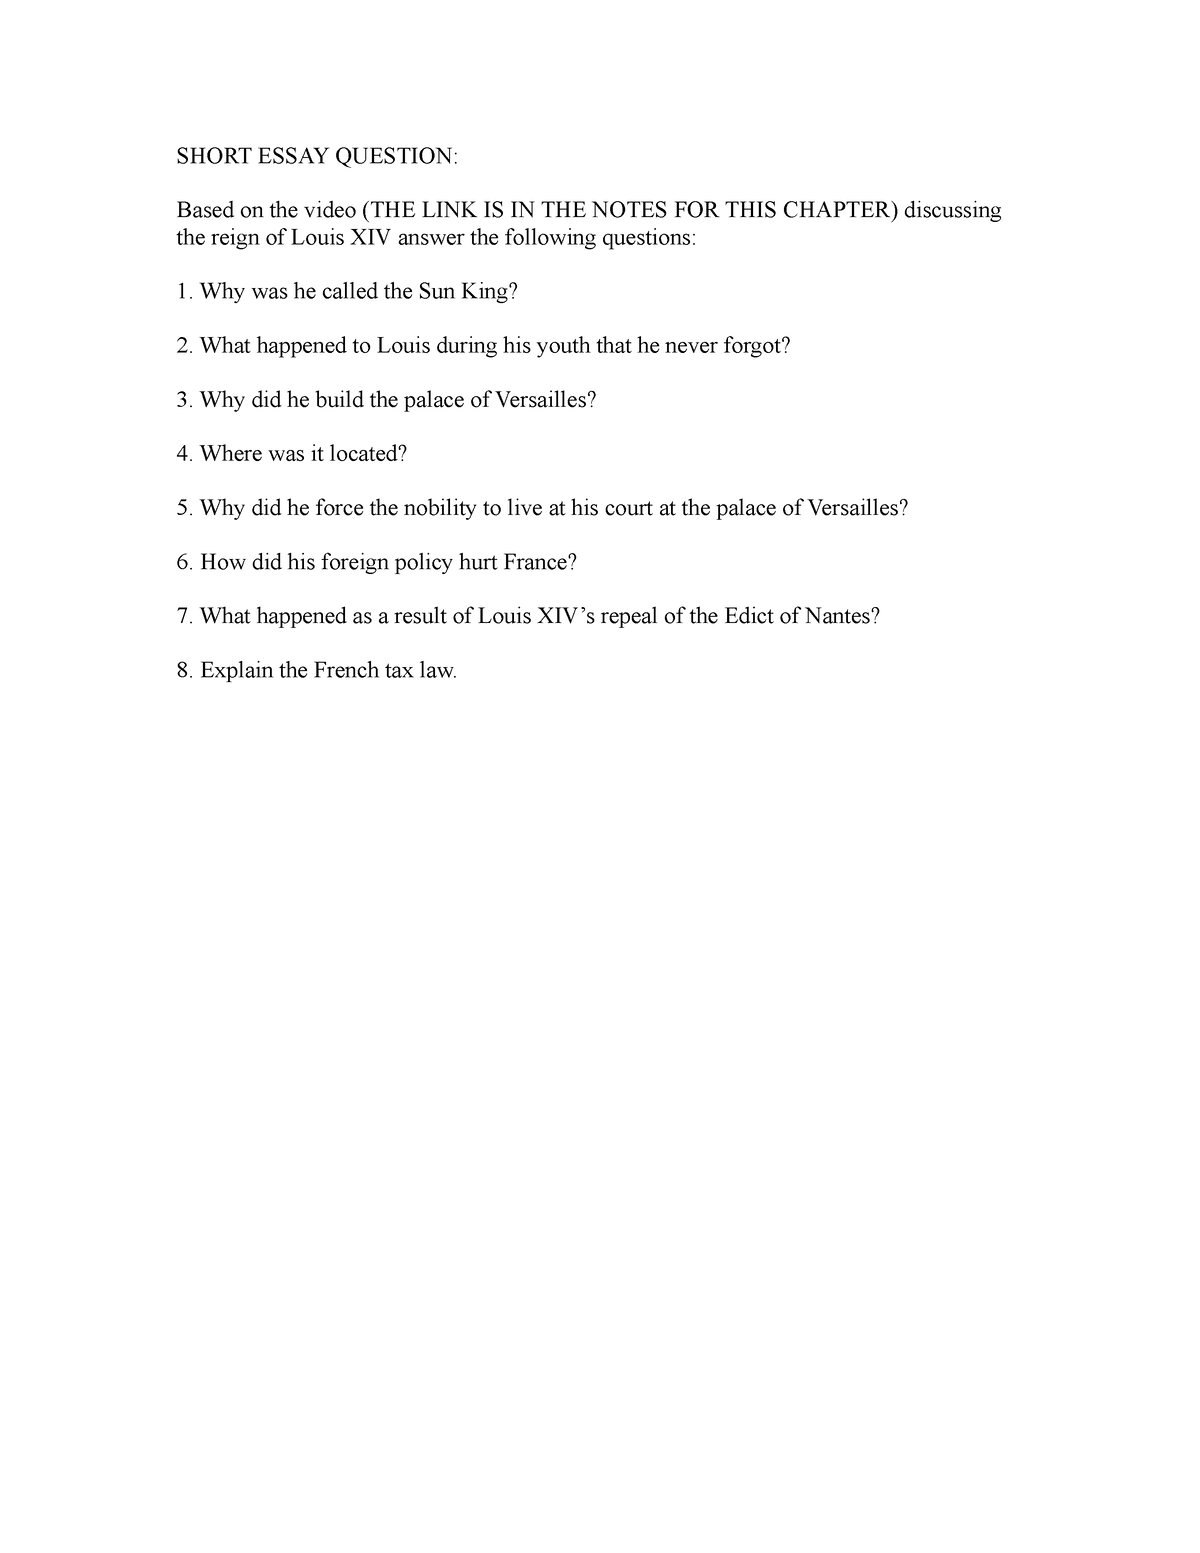 short essay question set 2